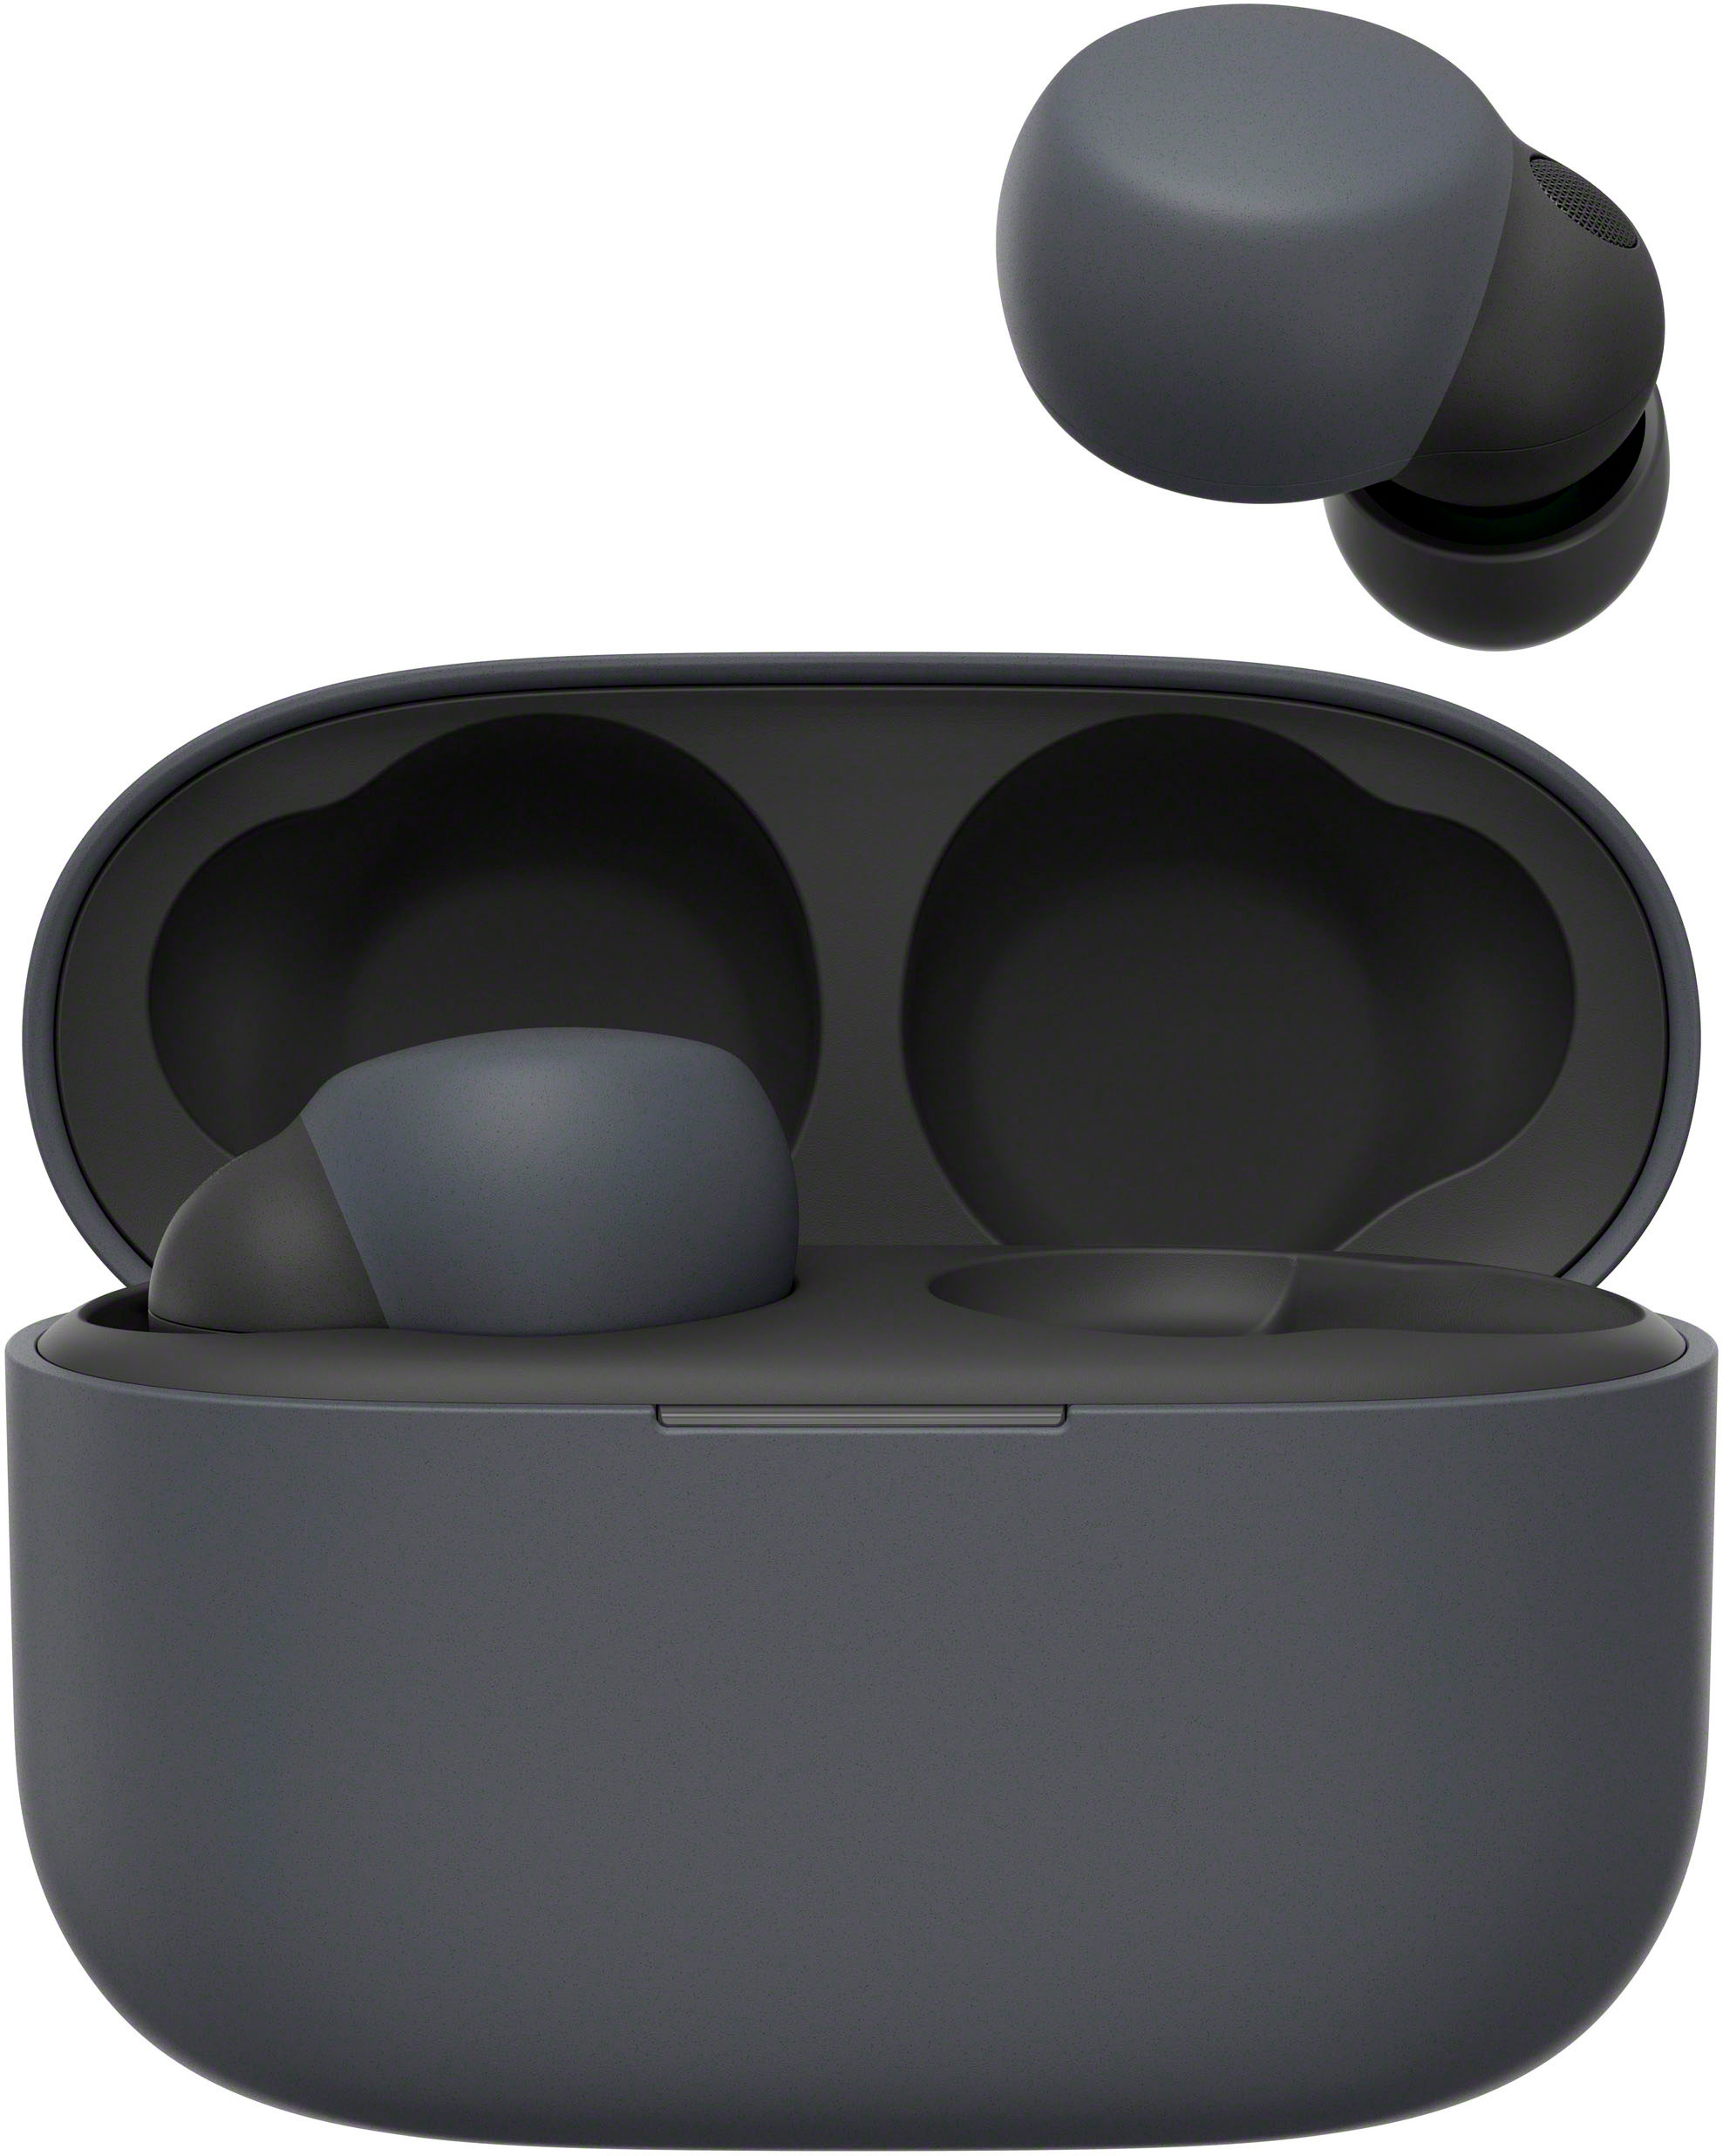 Sony LinkBuds S True Wireless Noise Canceling Earbuds Black 